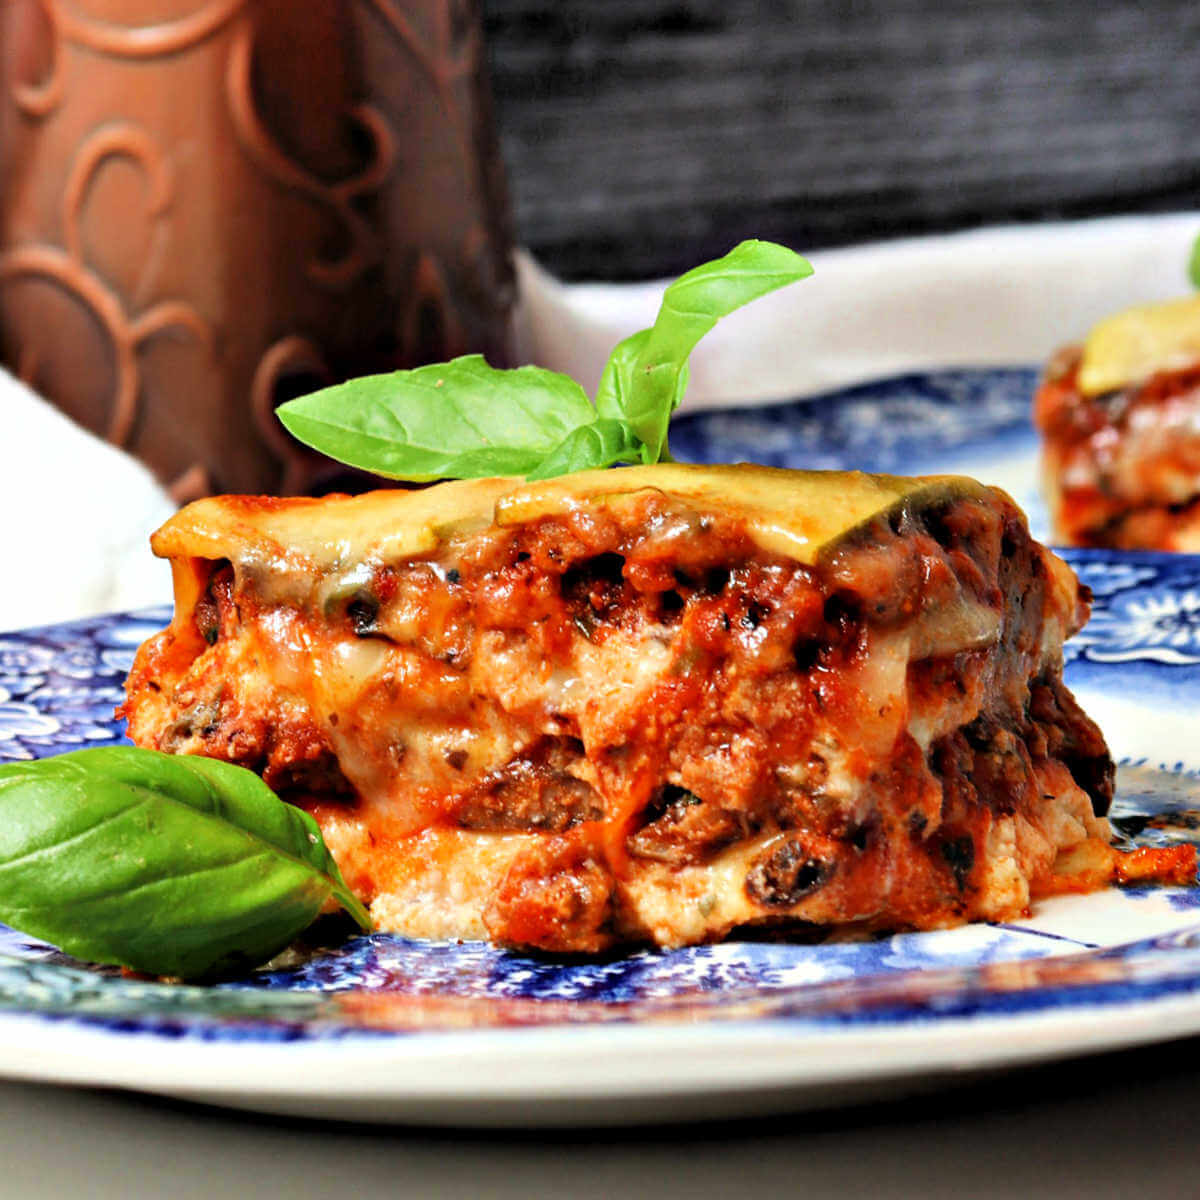 Cheesy Low Carb Keto Zucchini Lasagna - Explorer Momma